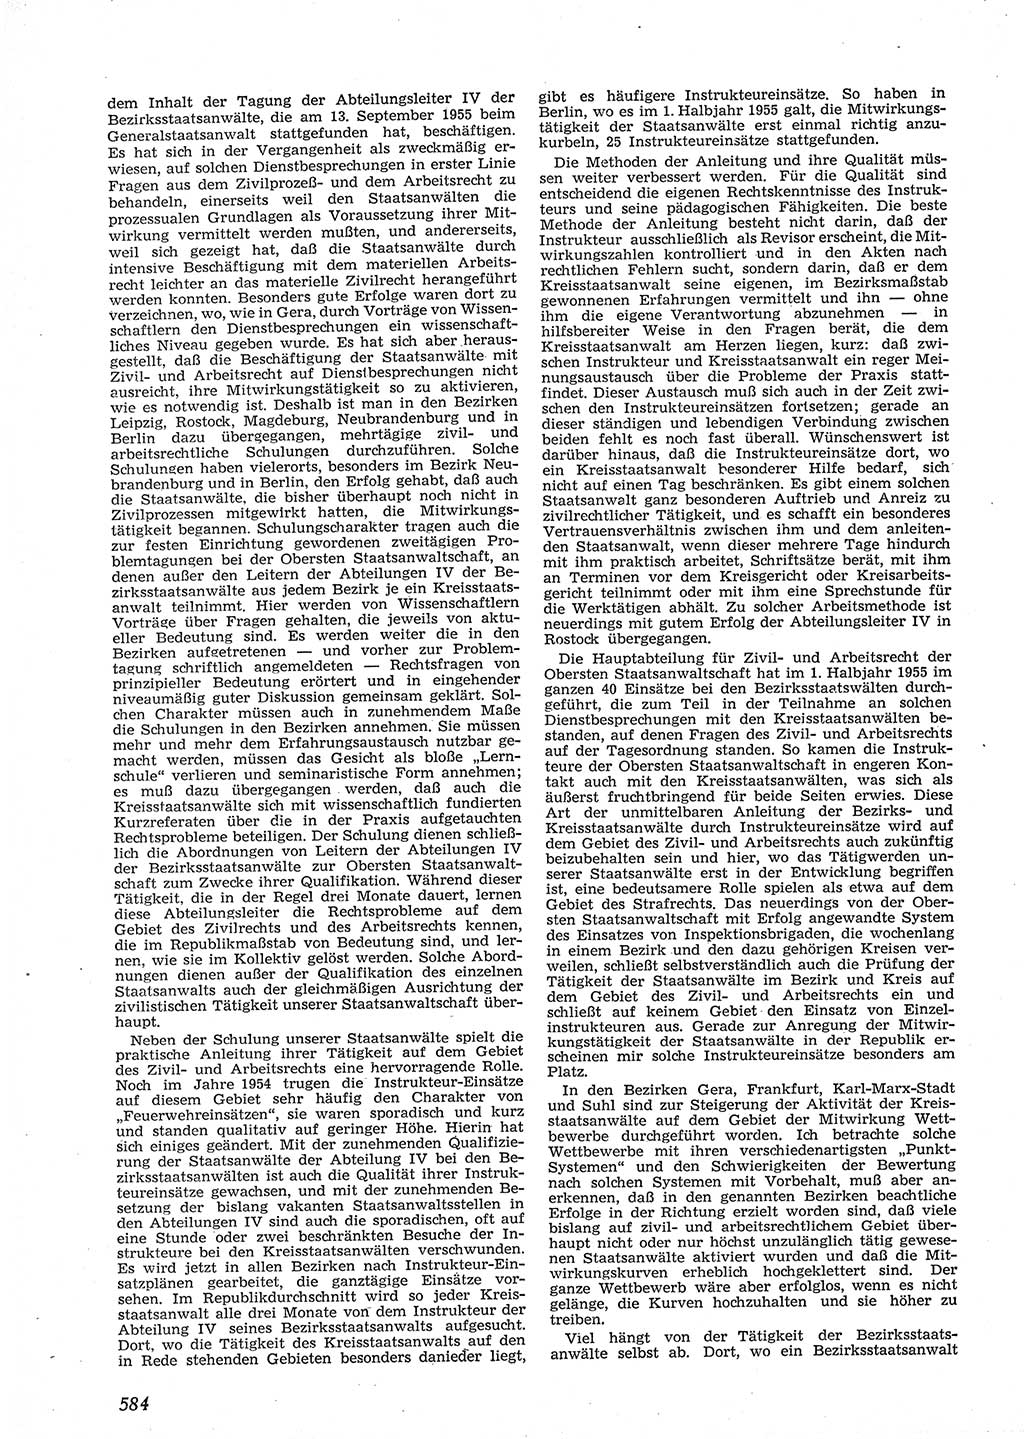 Neue Justiz (NJ), Zeitschrift für Recht und Rechtswissenschaft [Deutsche Demokratische Republik (DDR)], 9. Jahrgang 1955, Seite 584 (NJ DDR 1955, S. 584)